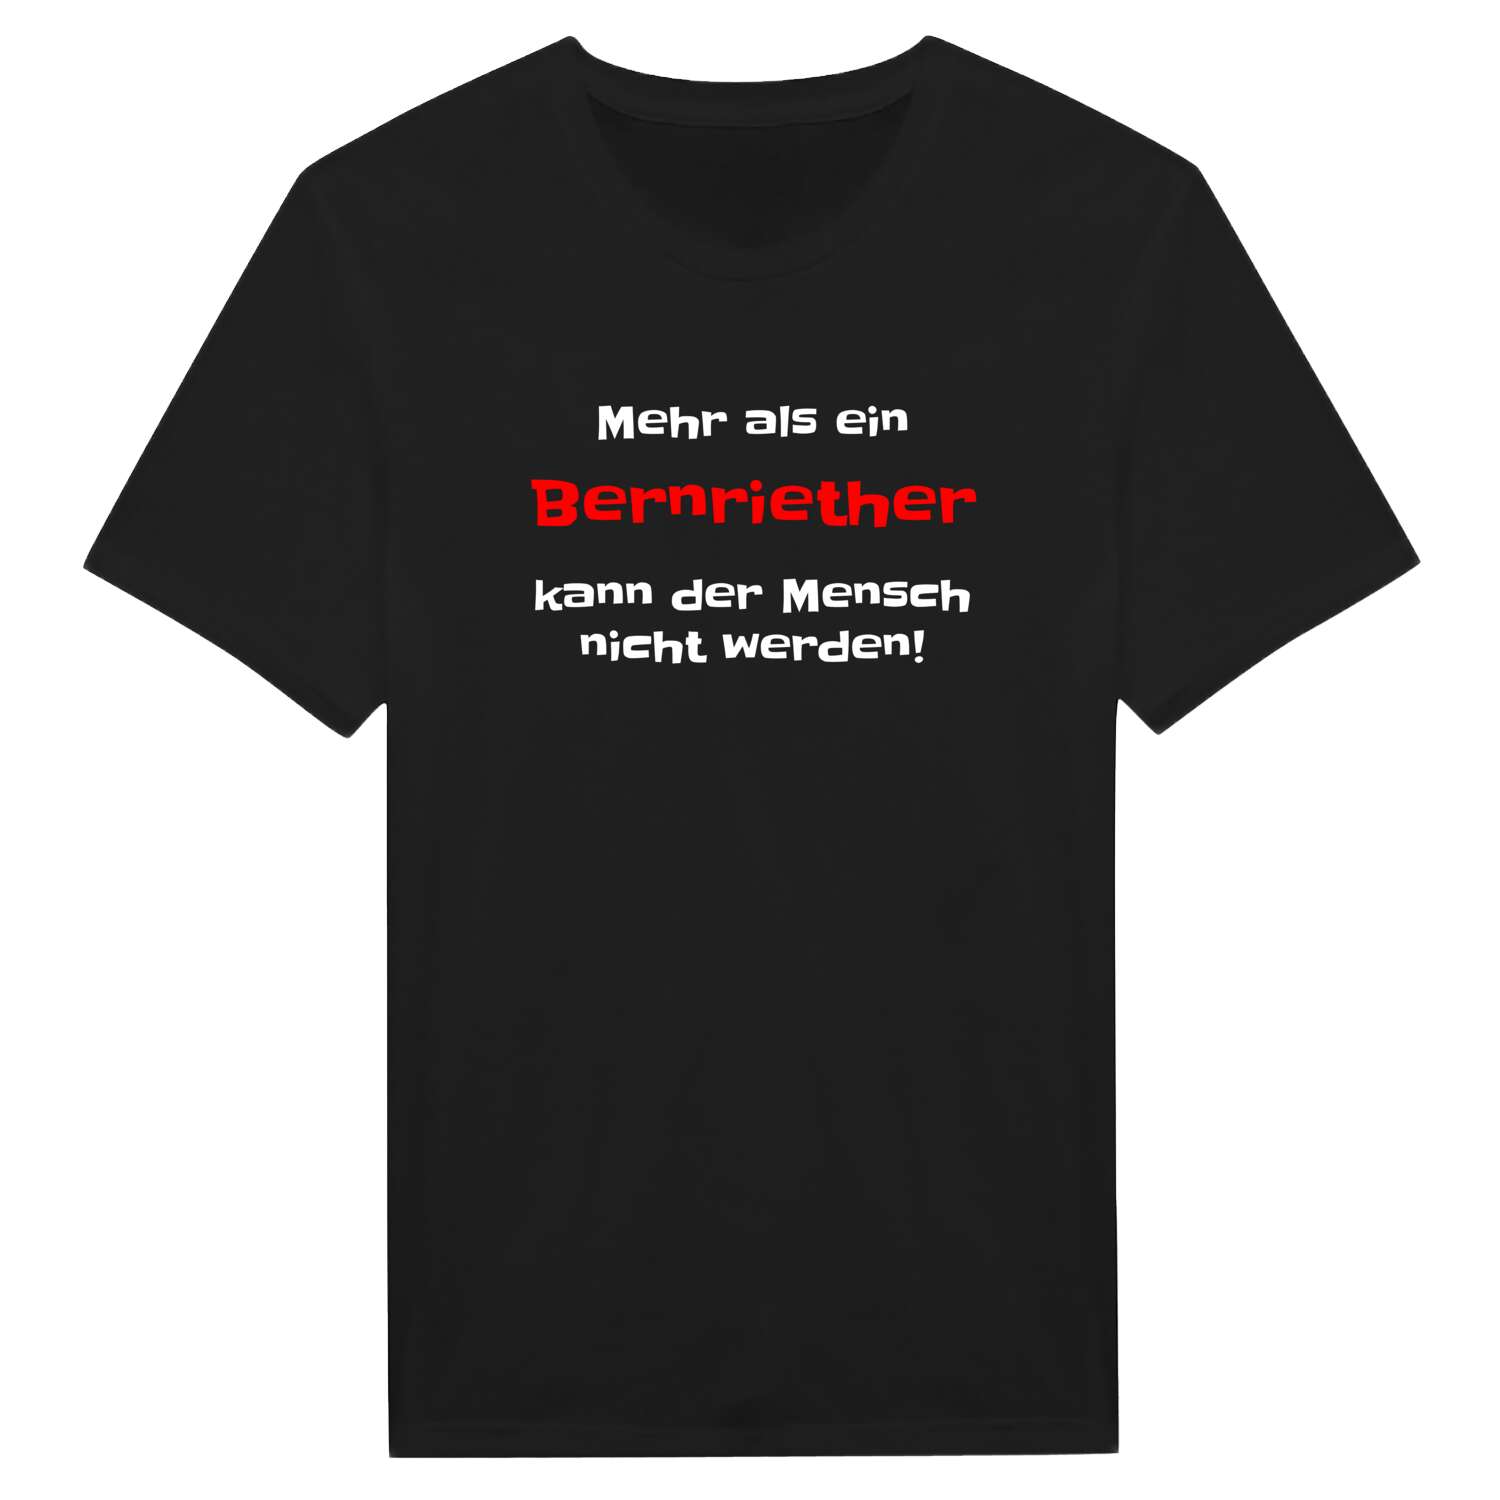 Bernrieth T-Shirt »Mehr als ein«